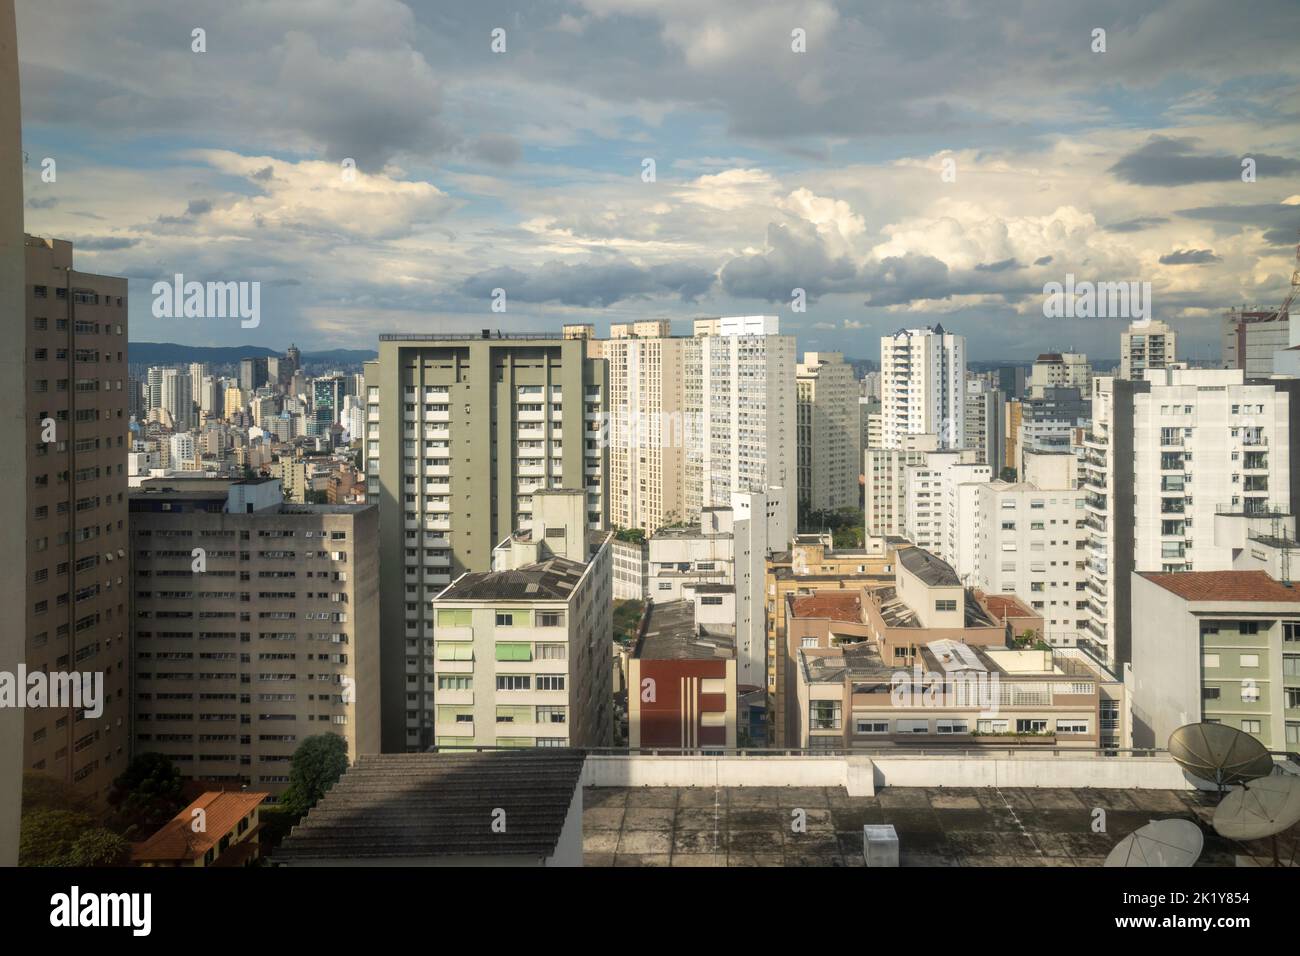 Schöne Skyline der Stadt São Paulo. Hohe Gebäude, Türme und Verschmutzung. Konzept von Stadtbild, Stadt, Reise, Architektur, Brasilien. Stockfoto